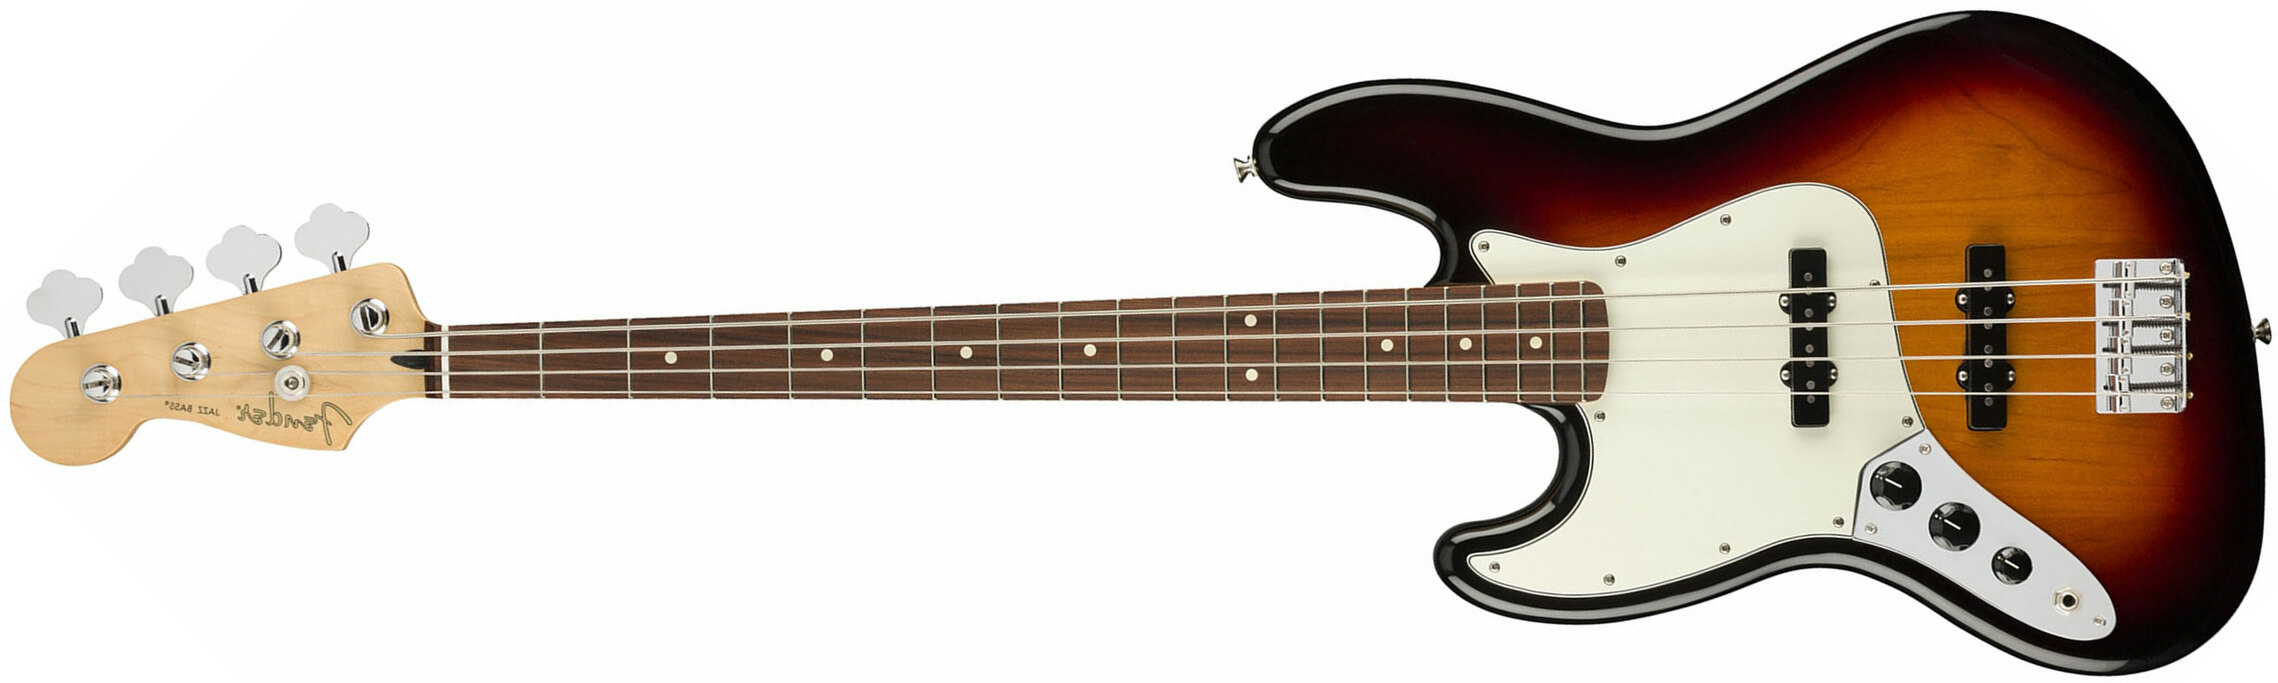 Fender Jazz Bass Player Lh Gaucher Mex Pf - 3-color Sunburst - Basse Électrique Solid Body - Main picture